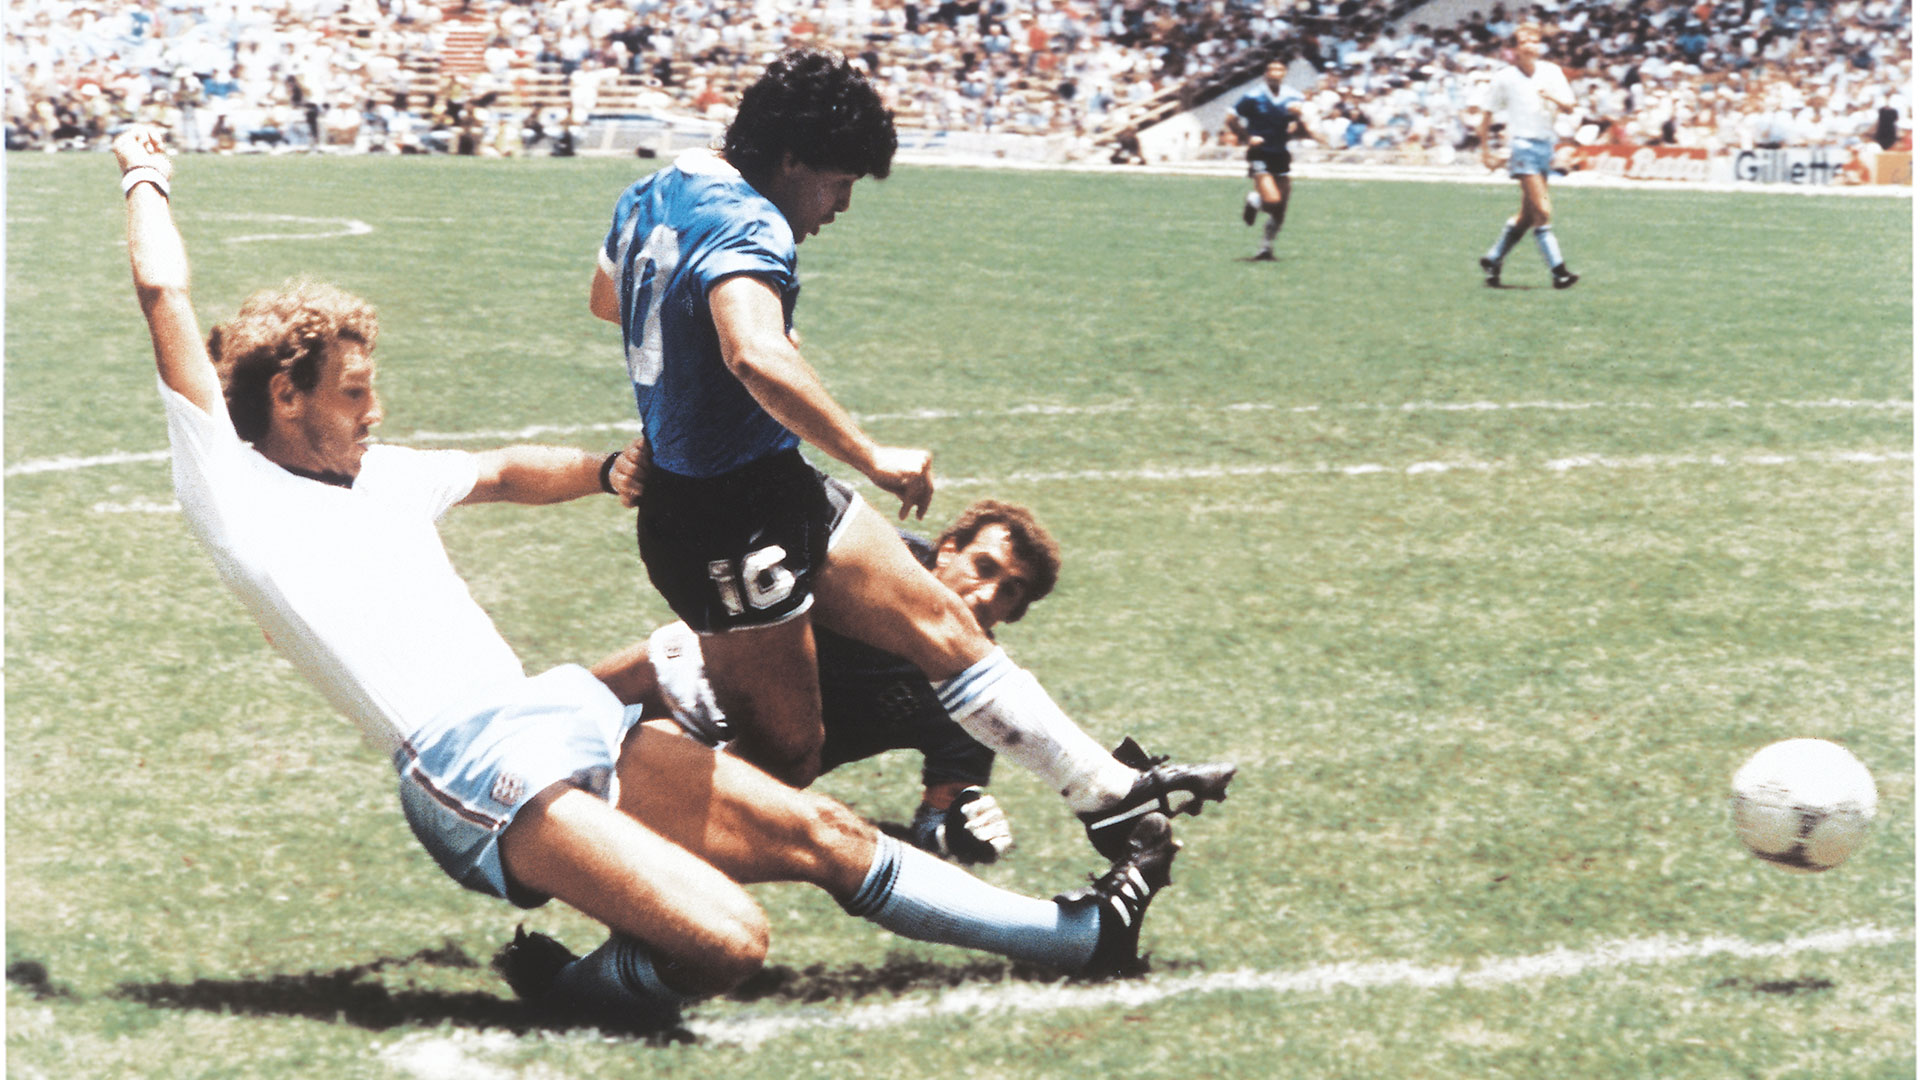 El gol de Maradona a los ingleses: “Once segundos” que lo cambiaron todo